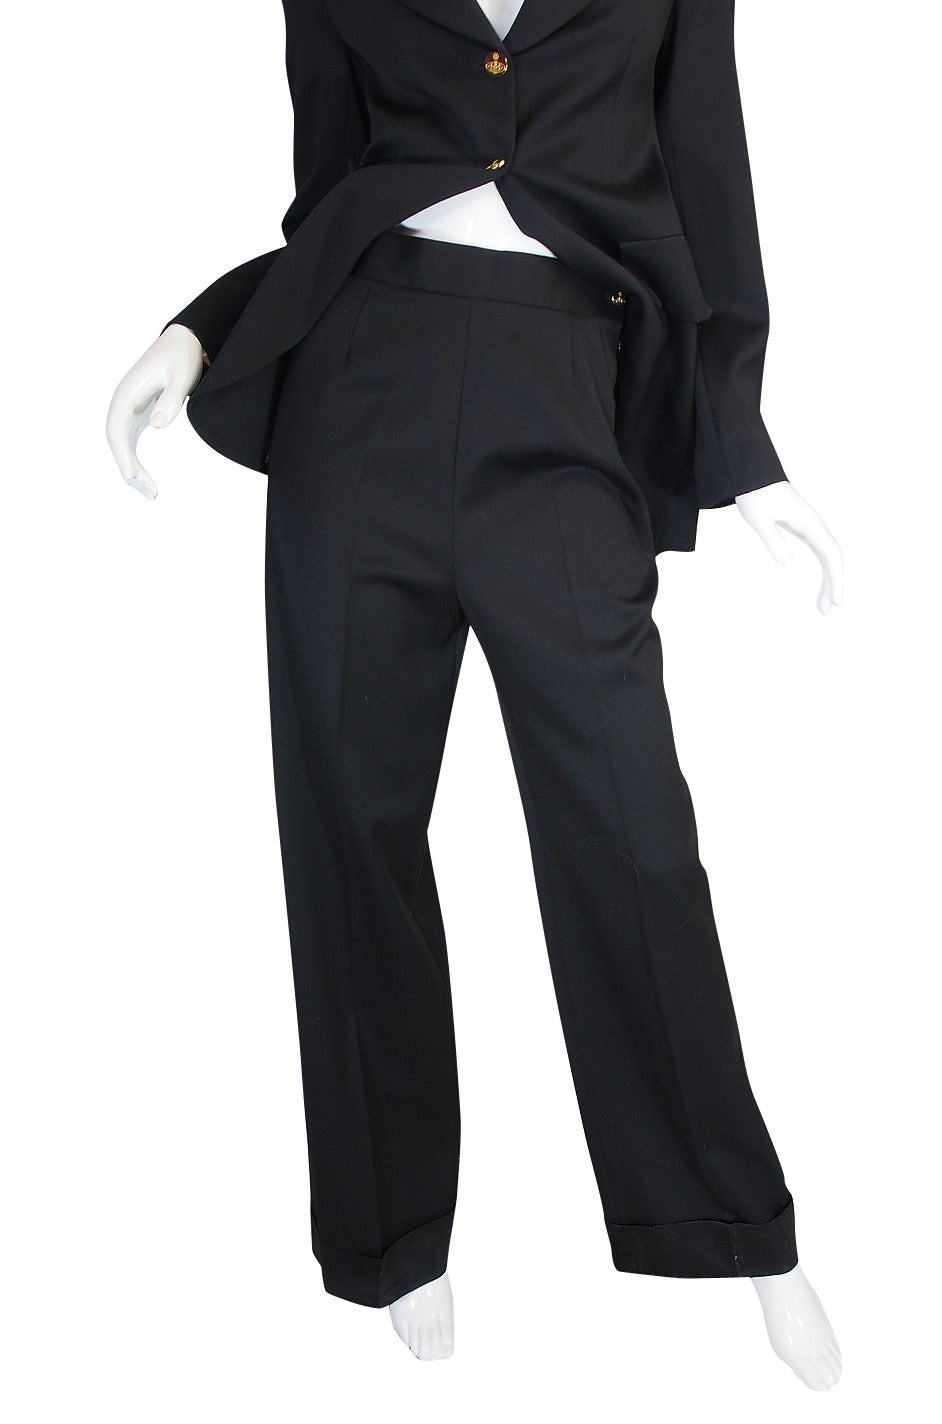 Rare 1990s Vivienne Westwood Black Tuxedo Suit 3